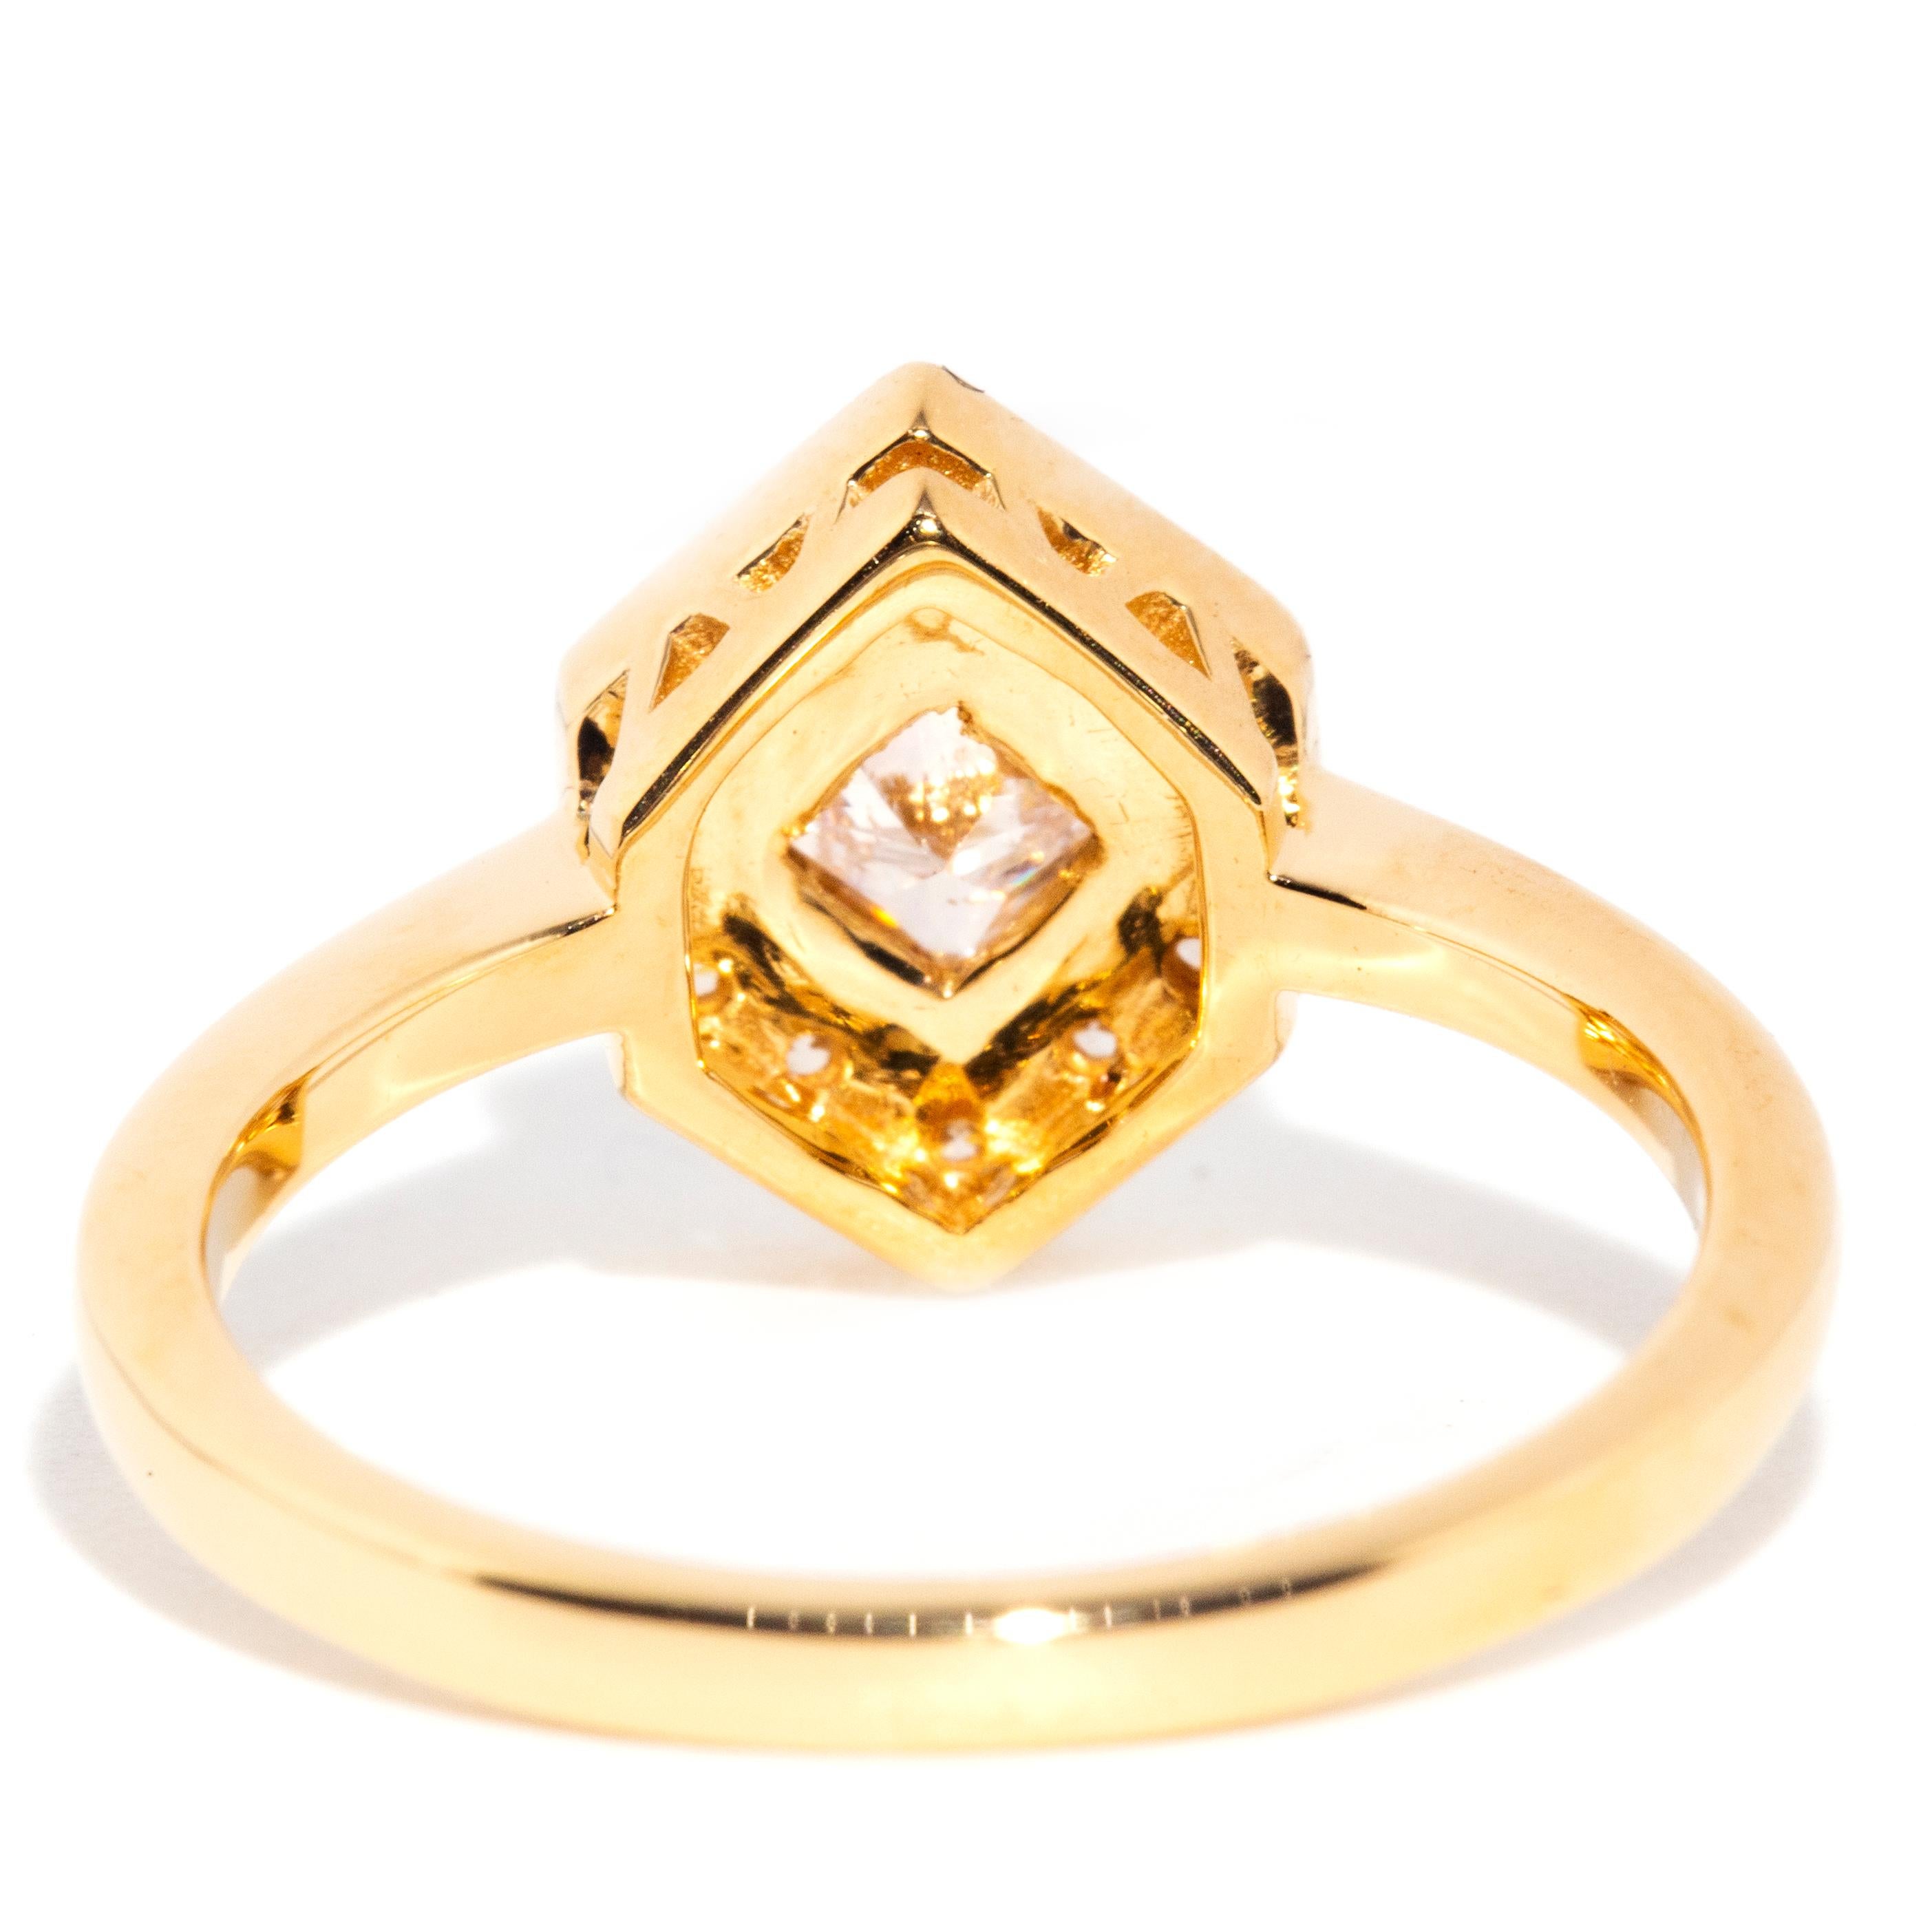 Contemporary 0.30 Carat Princess Cut Diamond 18 Carat Yellow Gold Cluster Ring 9